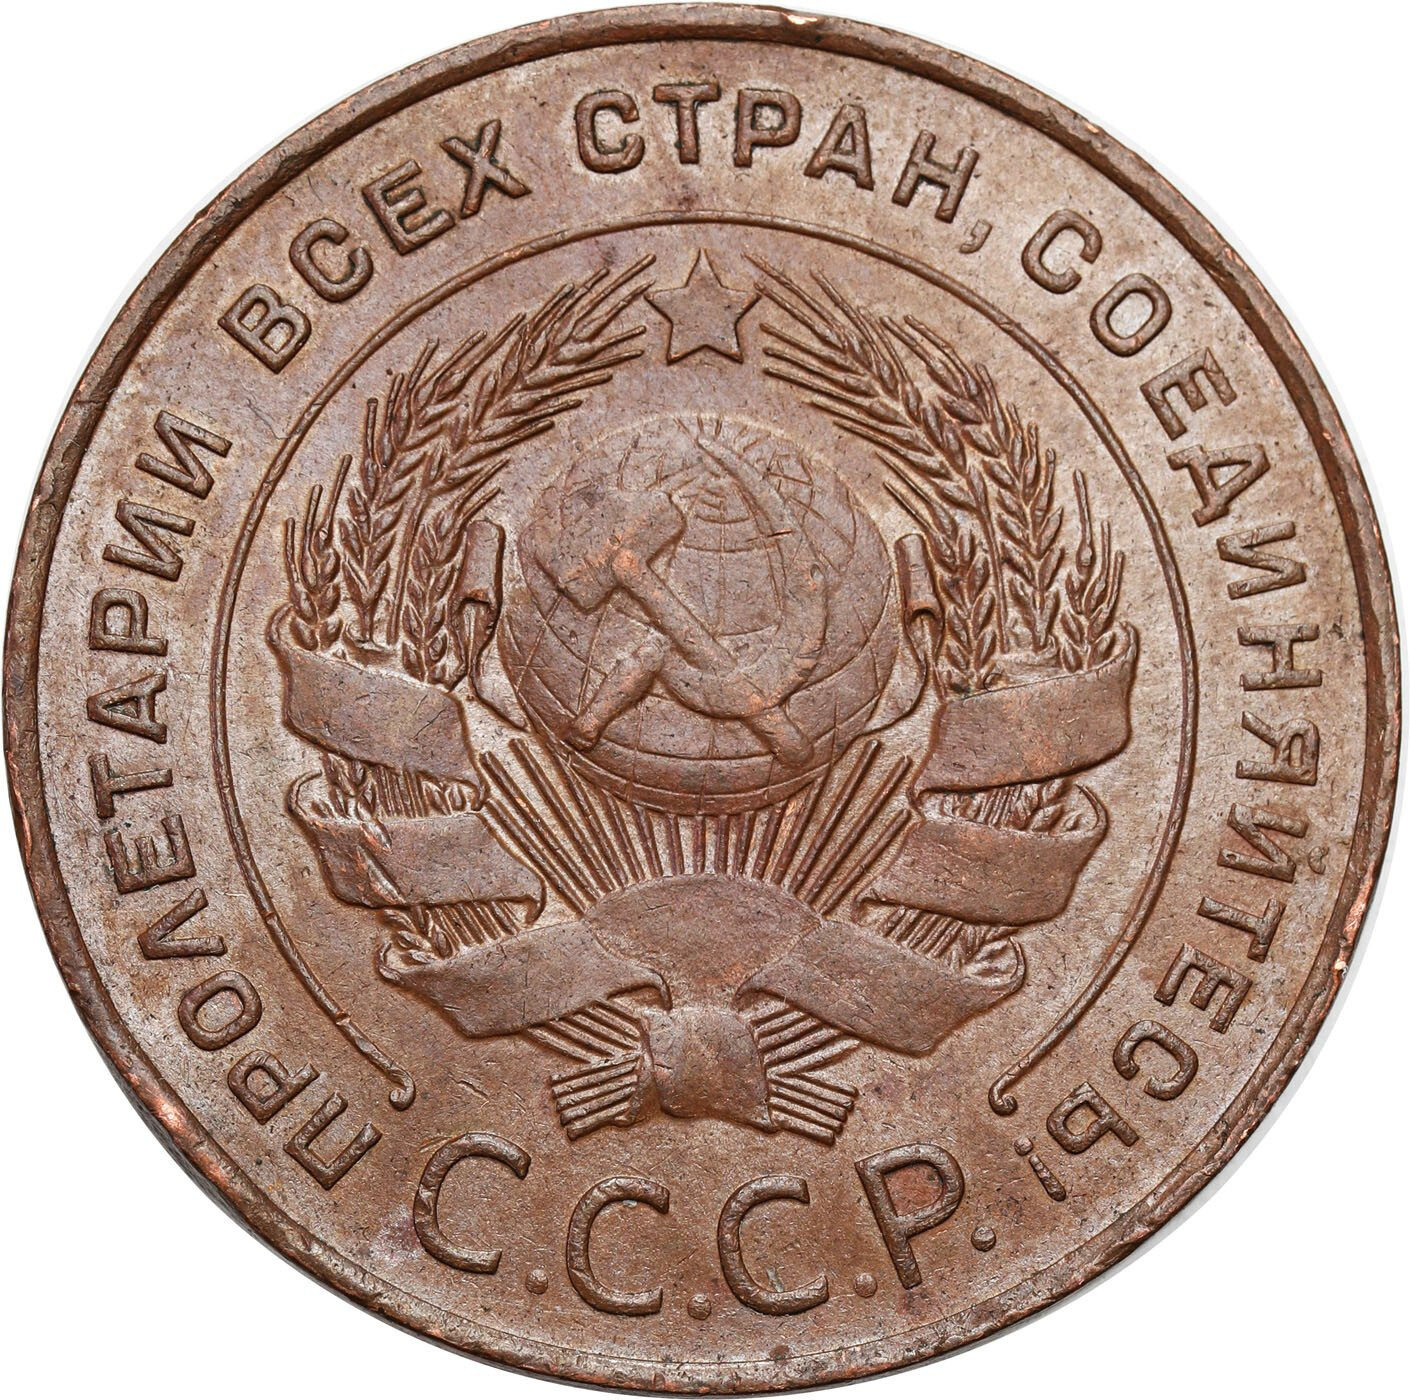 Rosja, ZSSR. 5 kopiejek 1924, Petersburg